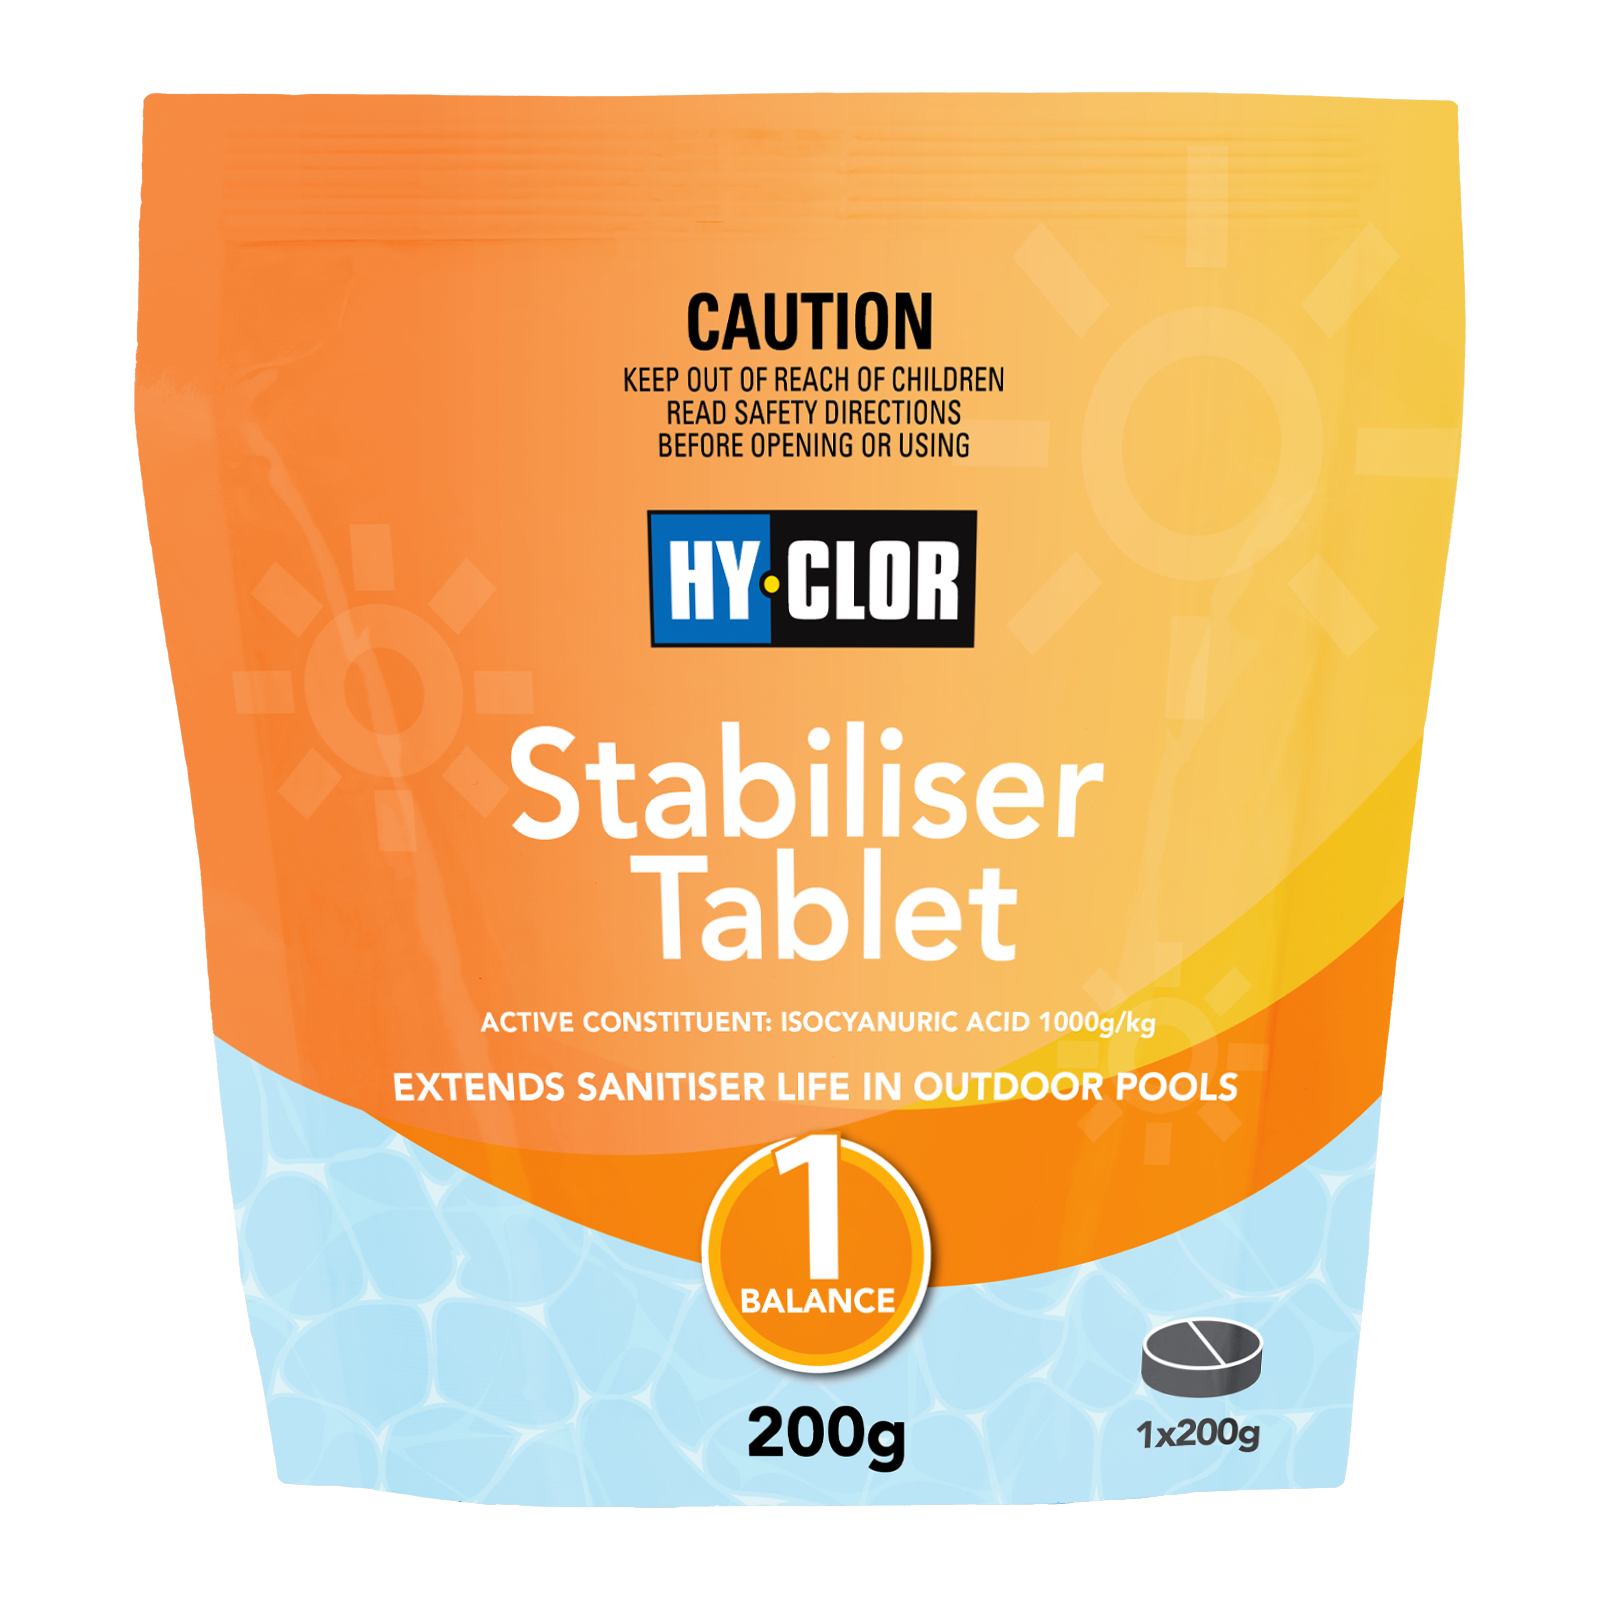 HY-CLOR Stabiliser Tablet